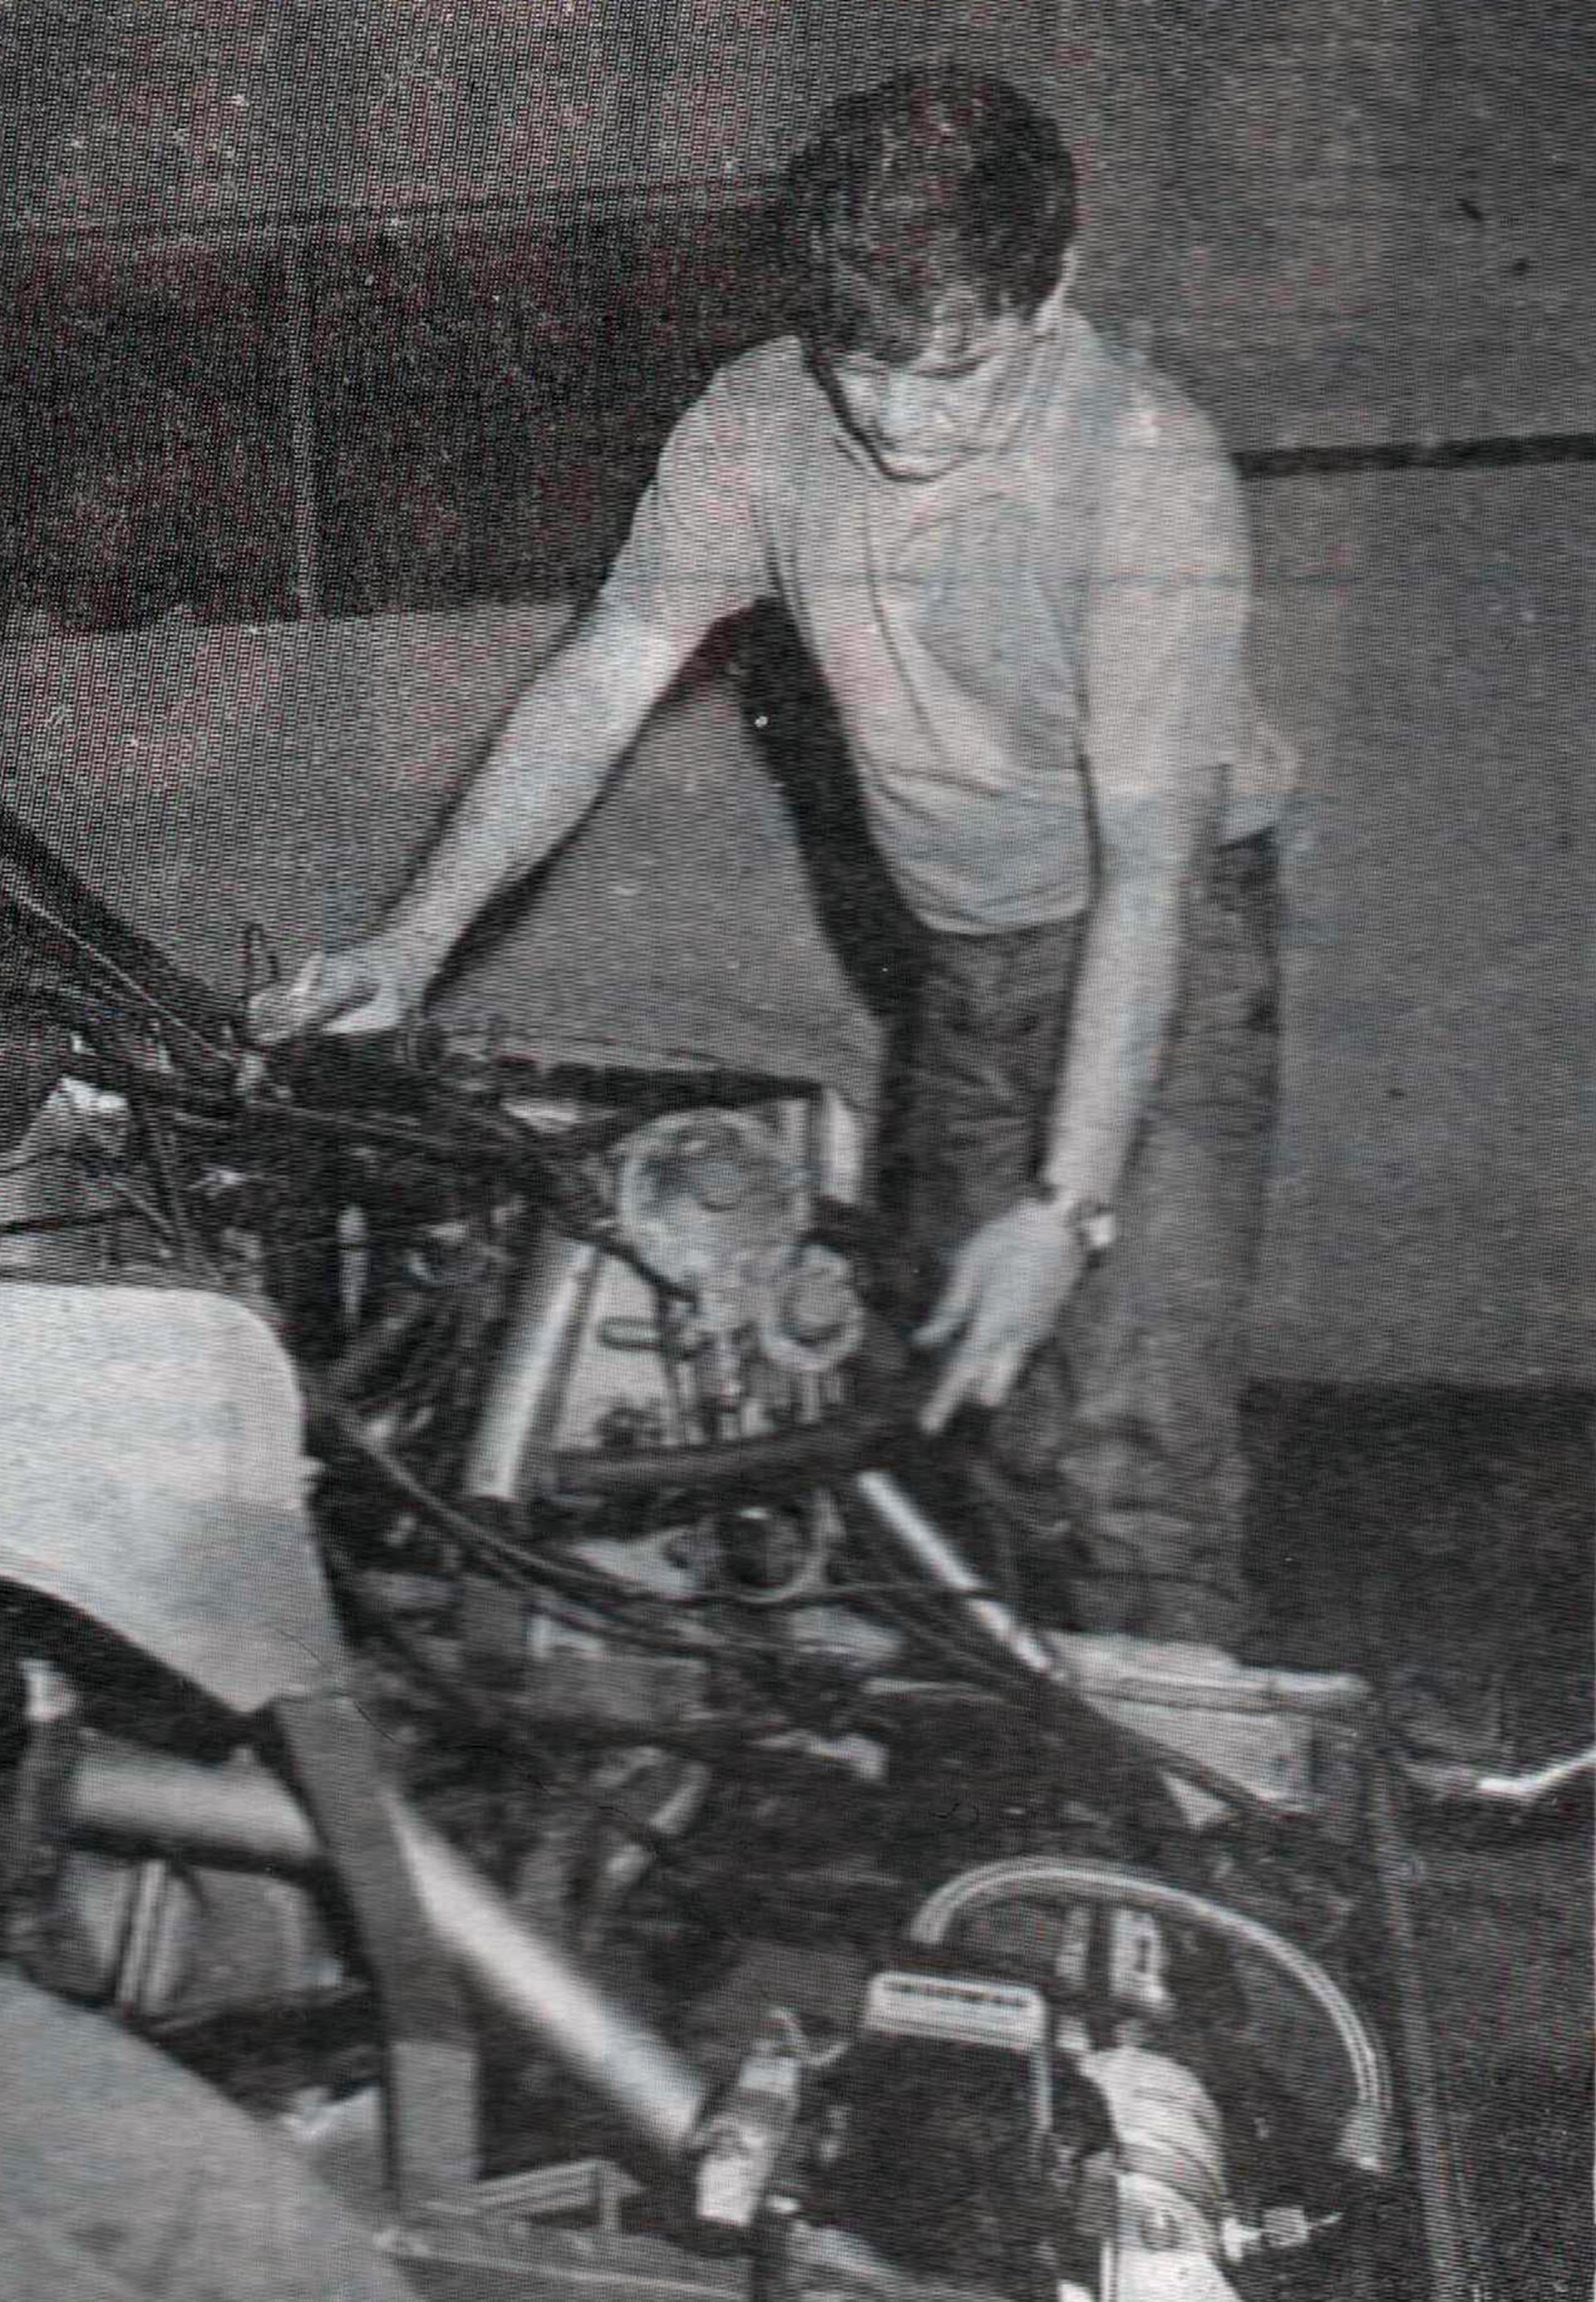 Luis trabajando sobre el motor del Torino (Archivo CORSA)